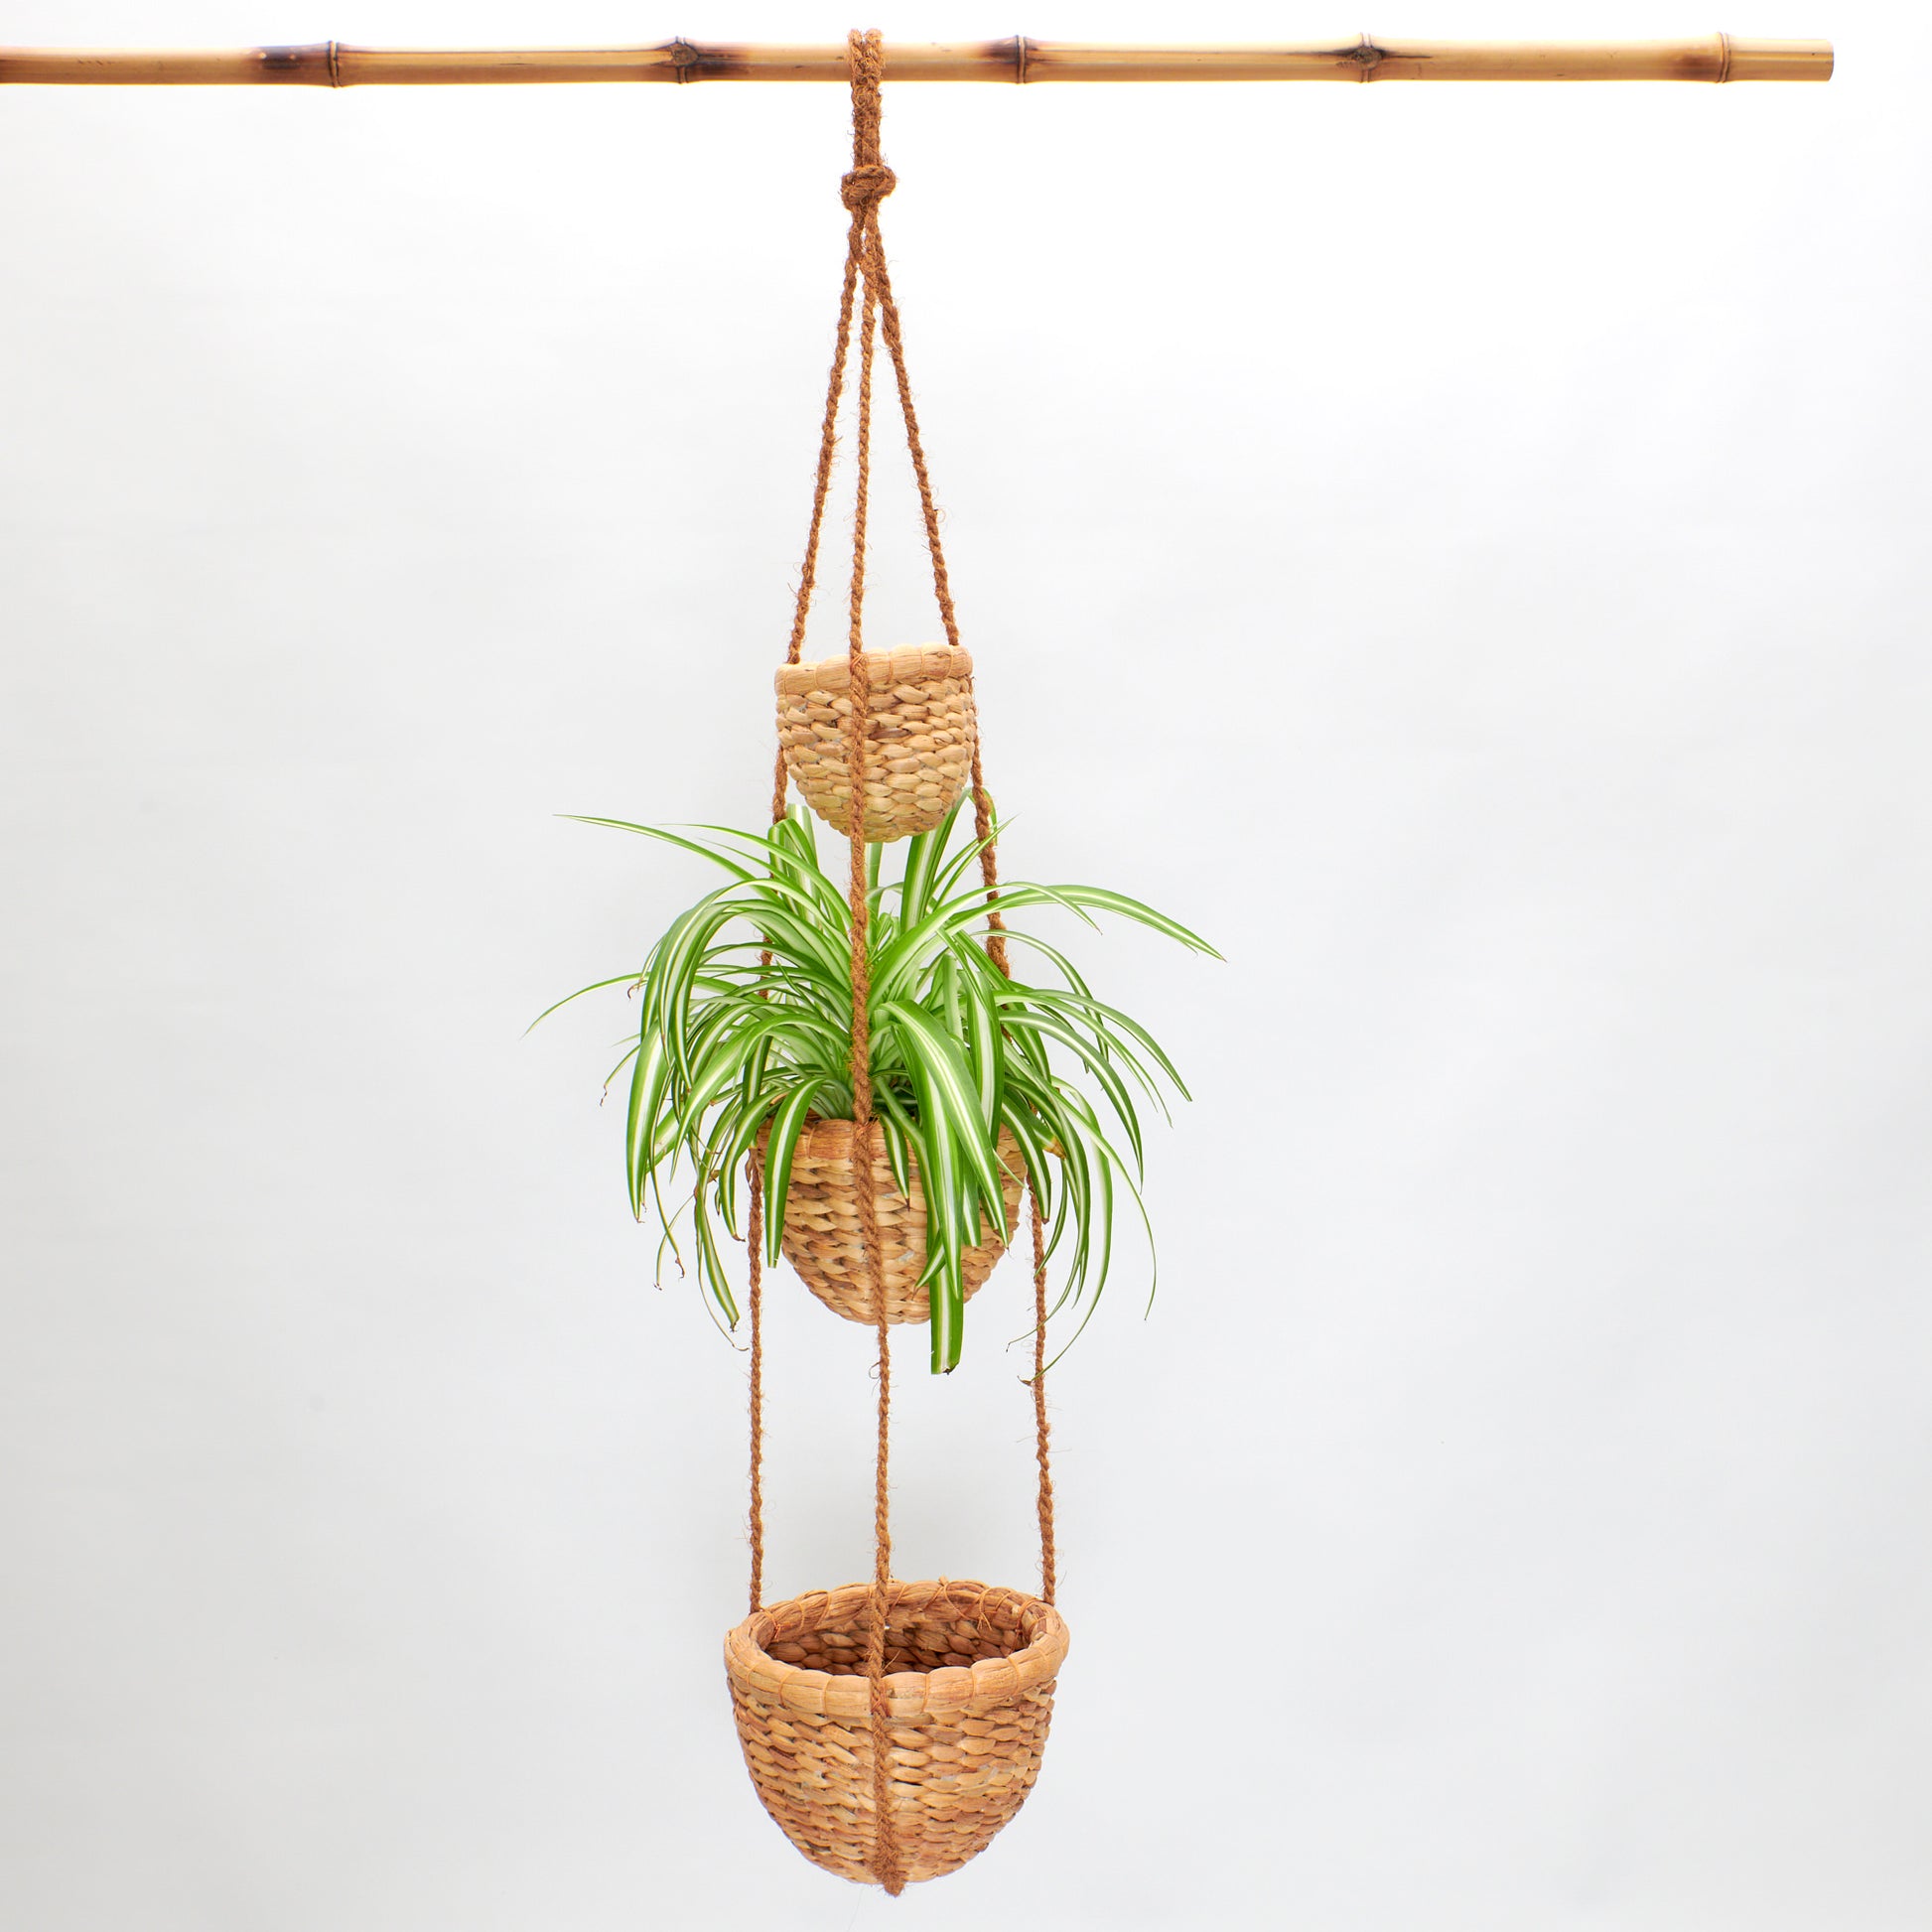 Blumenampel aus drei größer werdenden Töpfen, die mit Kokosfaserseil aufgehängt werden